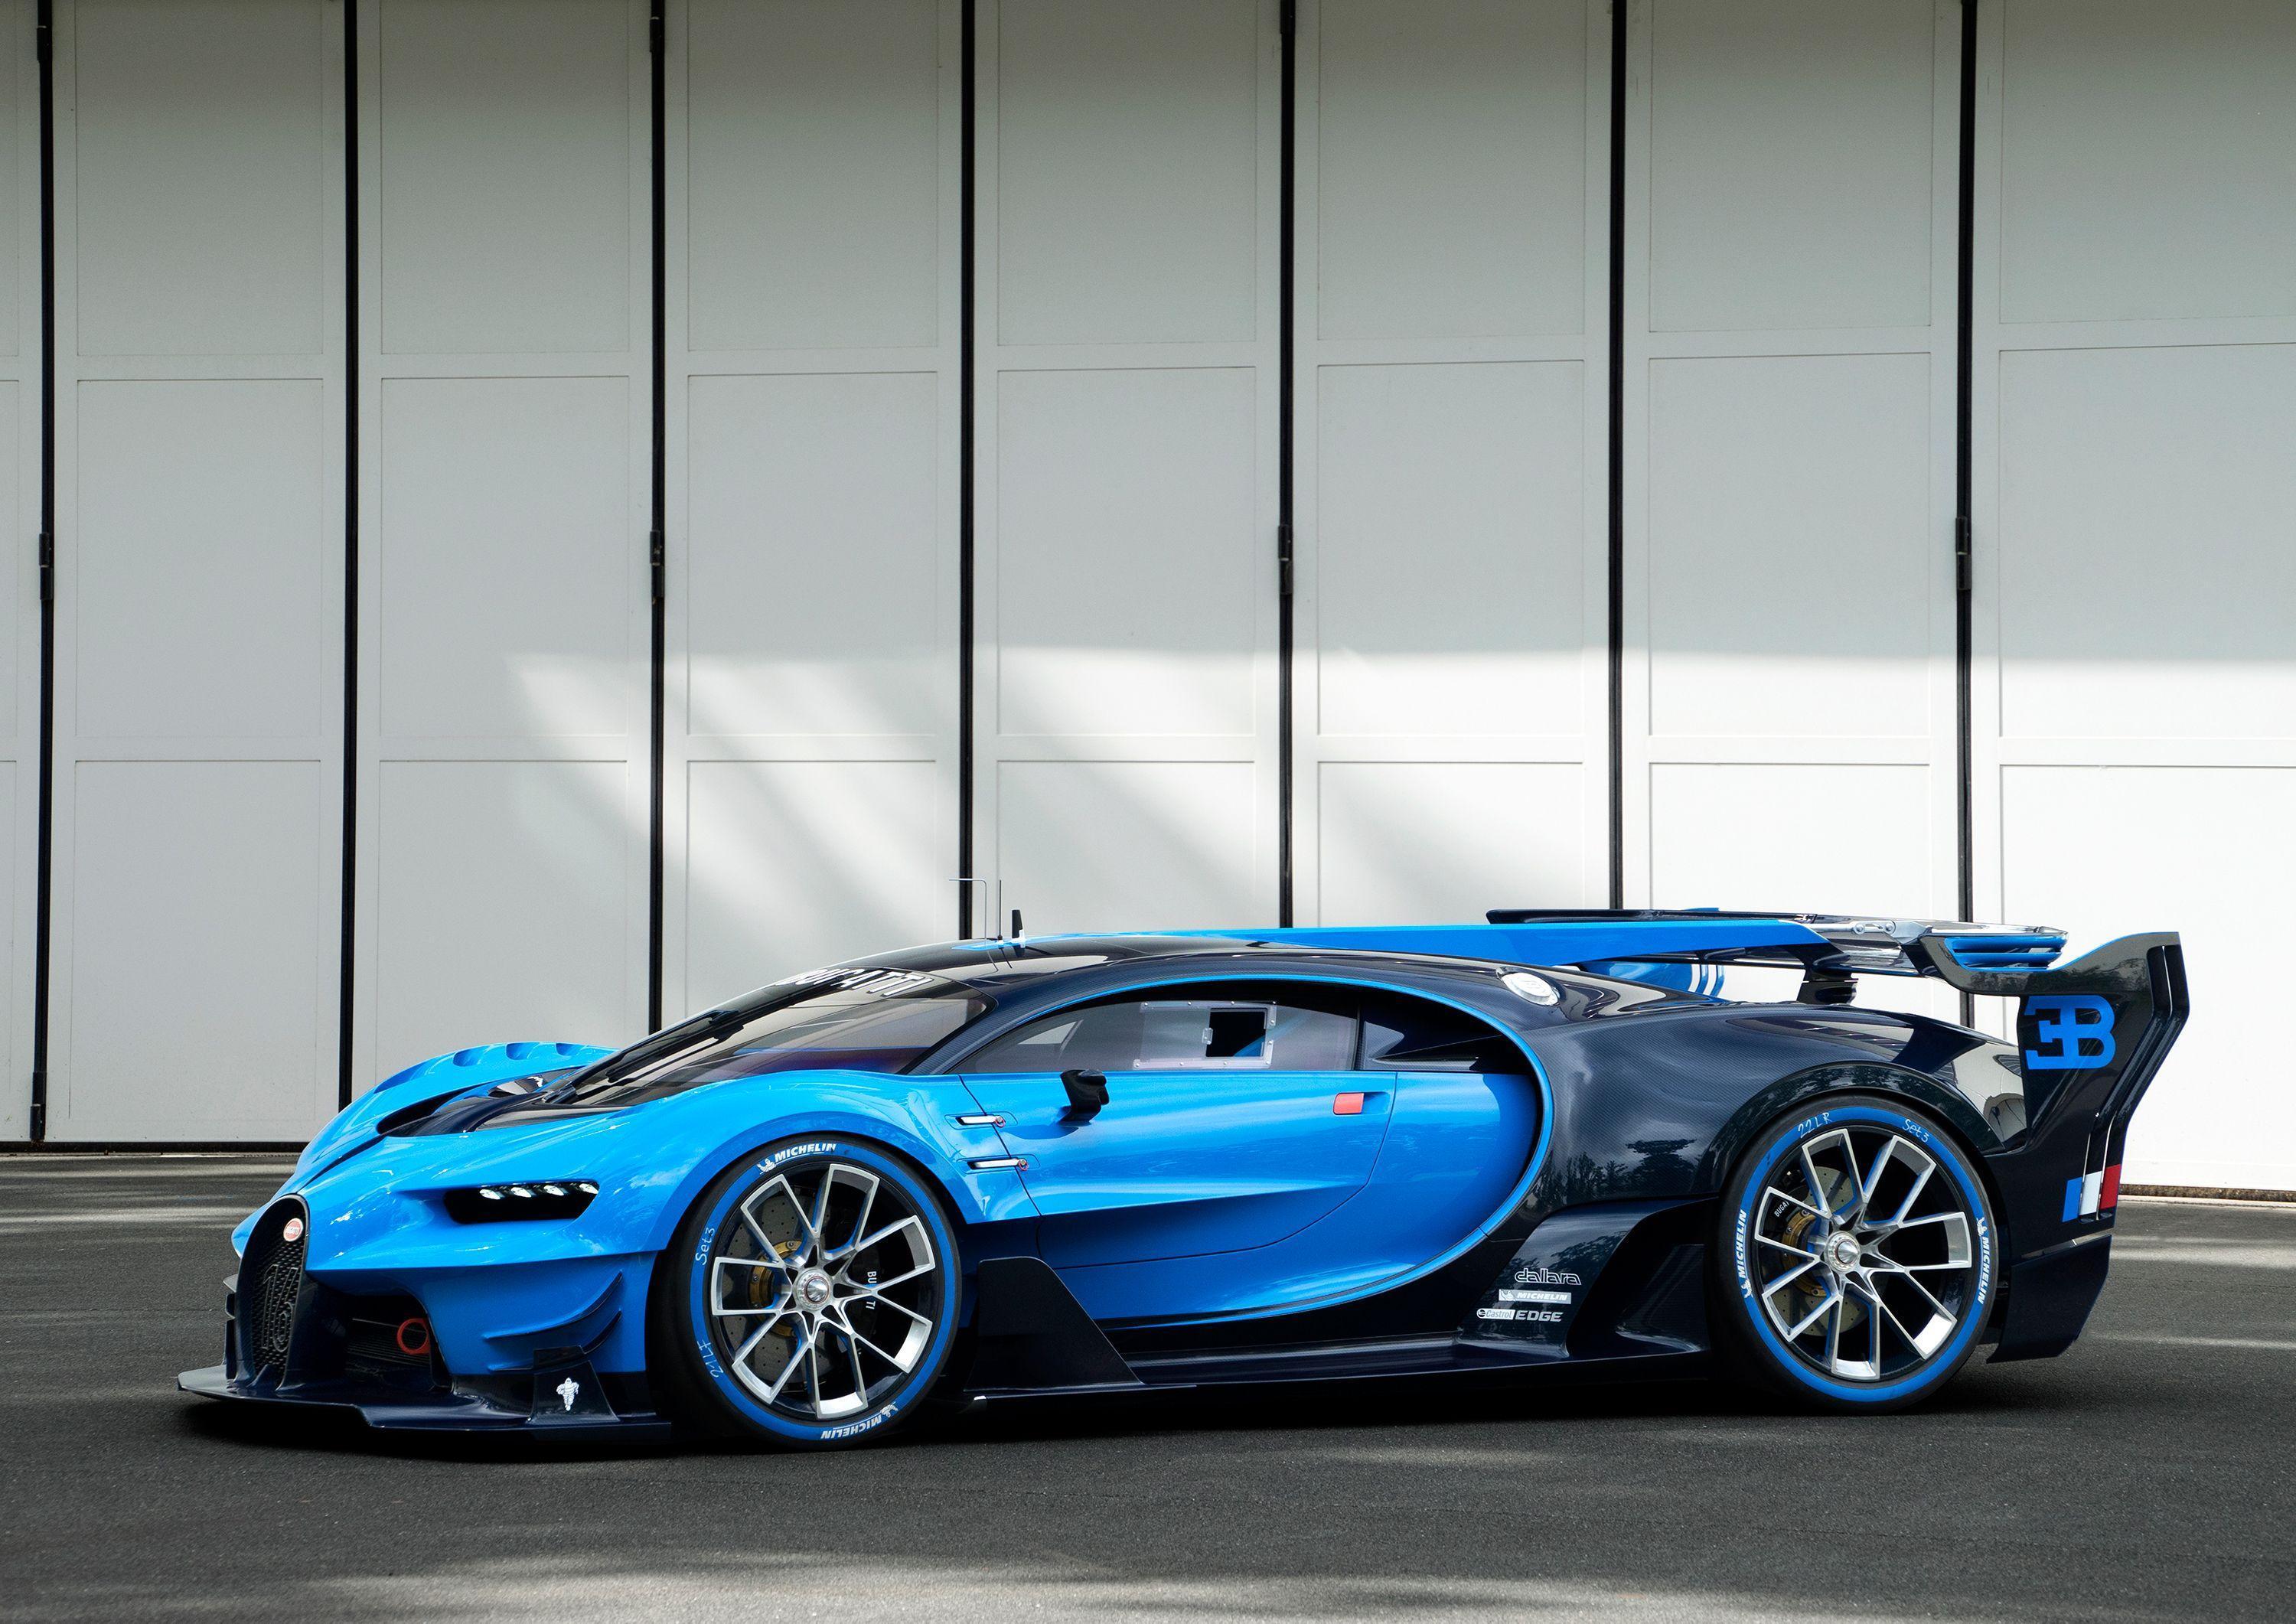 Bugatti Chiron HQ Wallpaper. Full HD Picture